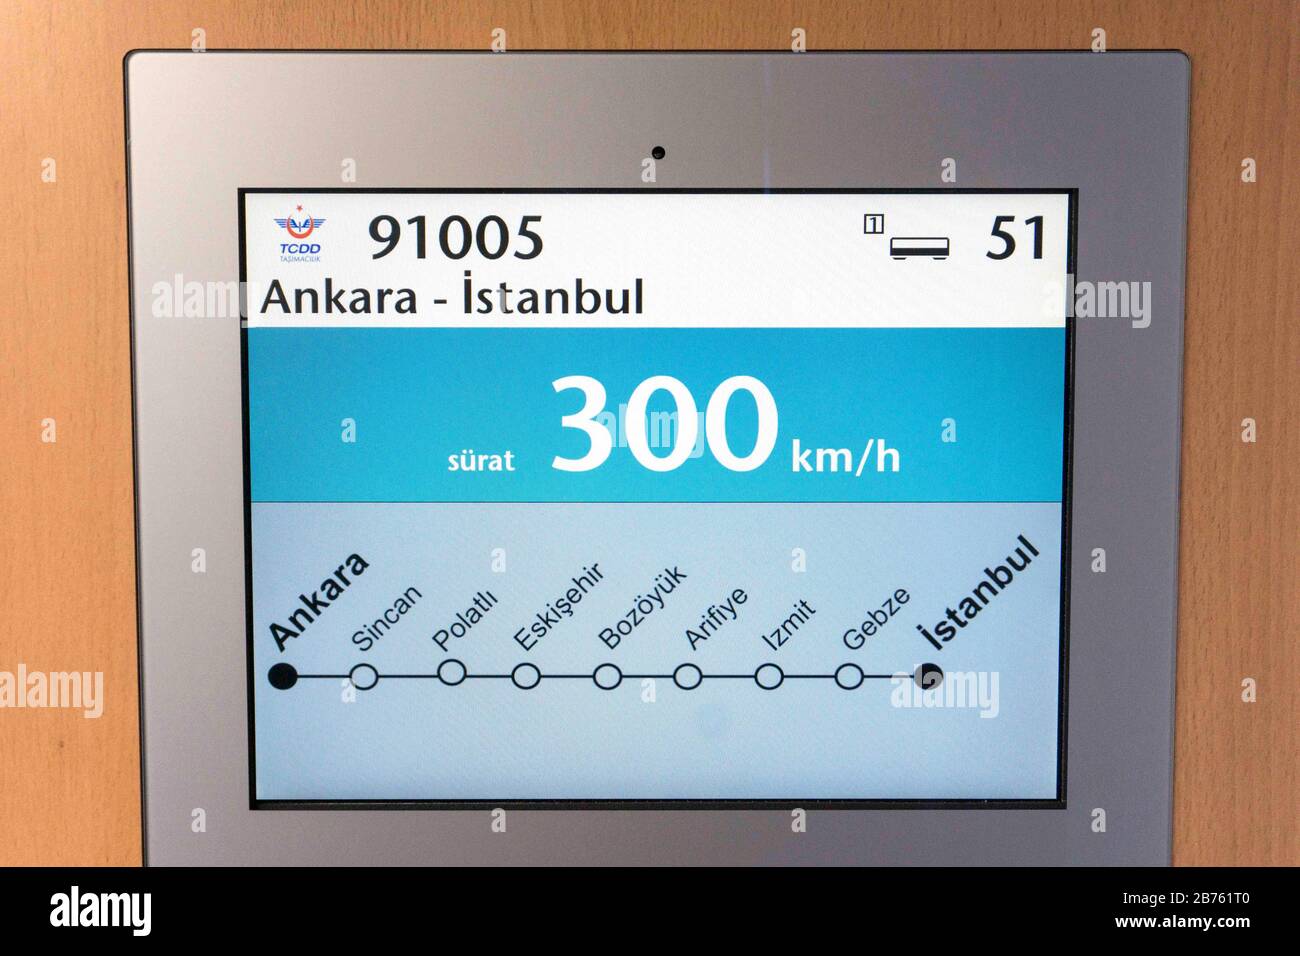 Eine Informationstafel zeigt die Zugstrecke von Ankara nach Istanbul in der Türkei in einem Abteilwagen der Schnellfahrstrecke Siemens Velaro am 20.09.2016 auf der Berliner InnoTrans Messe. Die türkische Staatsbahn TCDD hat auf dieser Strecke bereits einen Velaro in Betrieb, weitere sechs Schnellzüge folgen bis 2017. [Automatisierte Übersetzung] Stockfoto